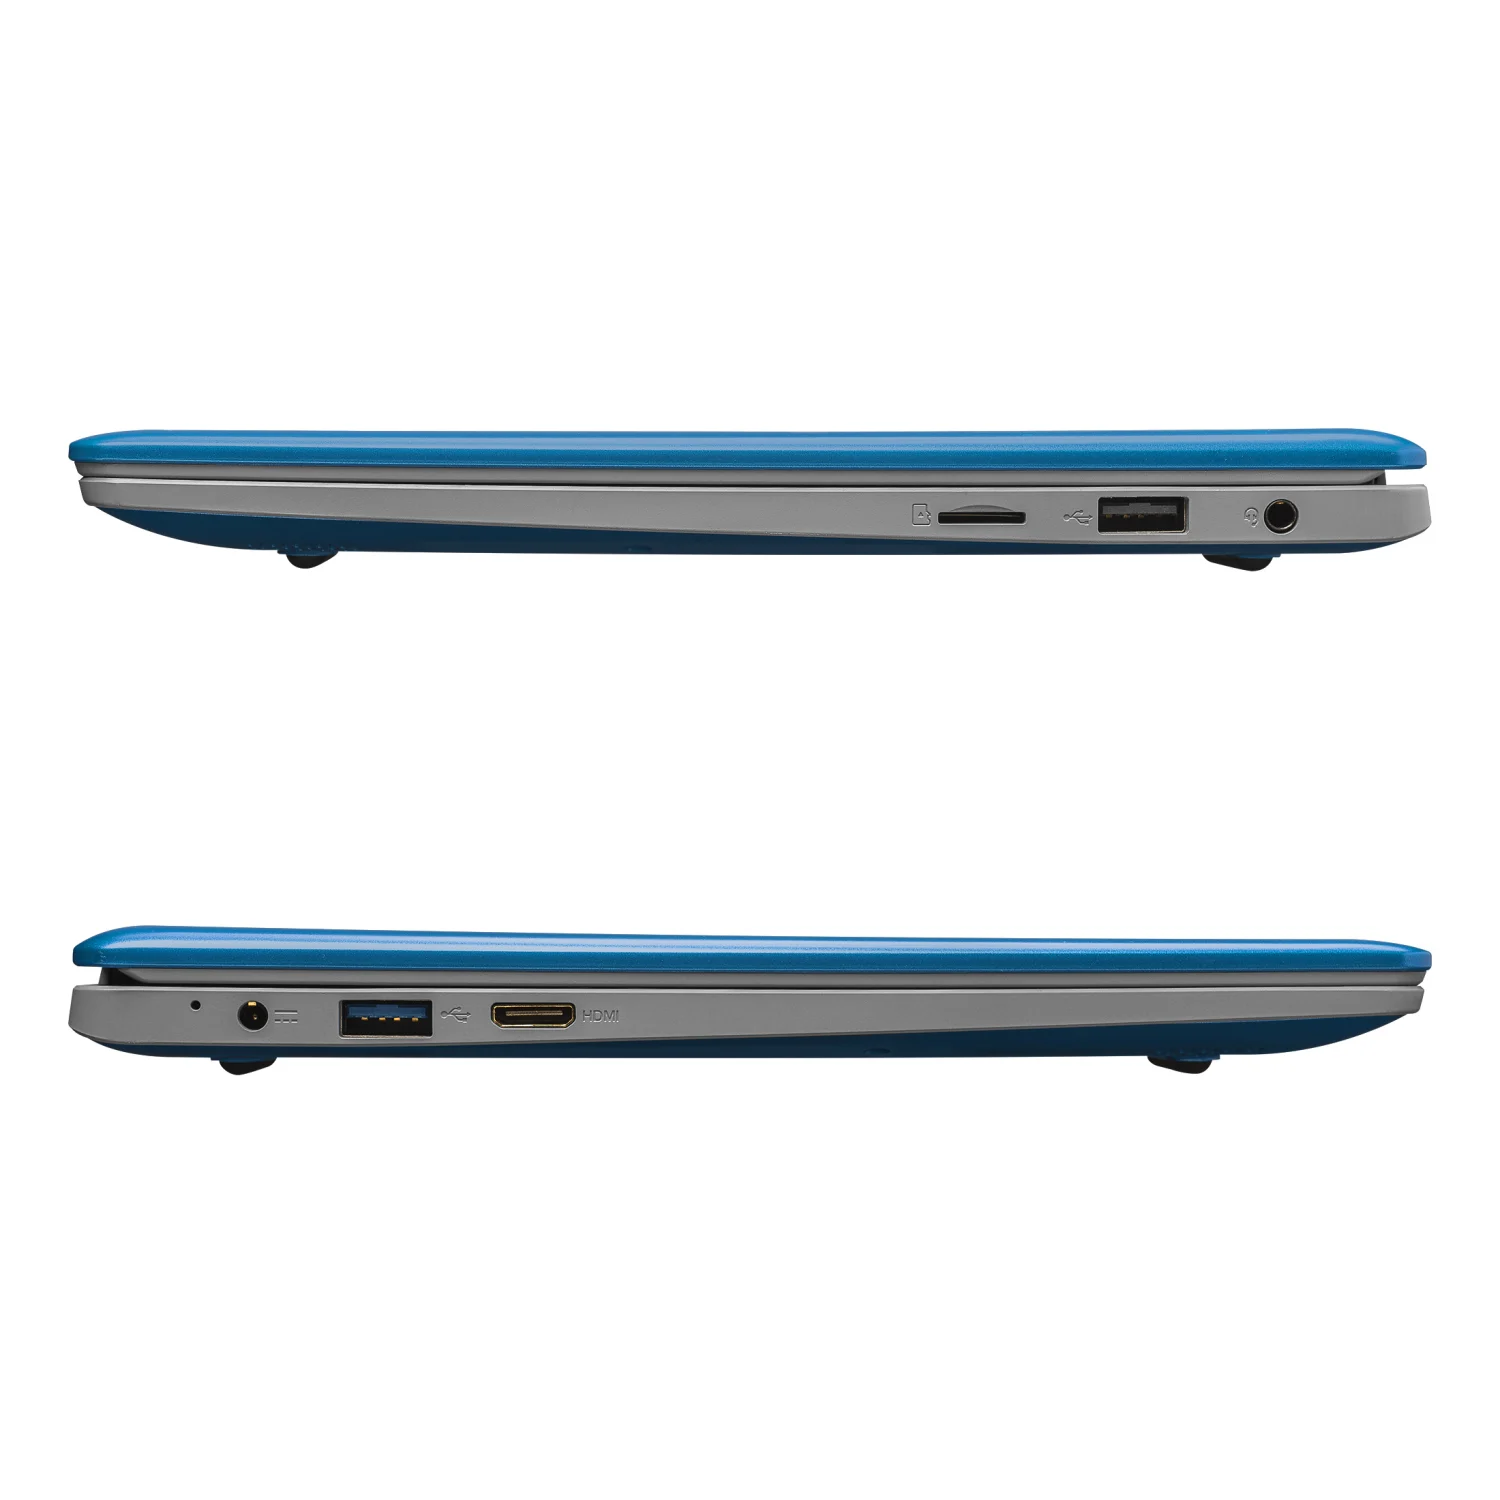 Notebook EVC-115-7BL / Intel celeron N4000 / 64GB SSD / 4GB RAM / Tela 11.6" - Azul